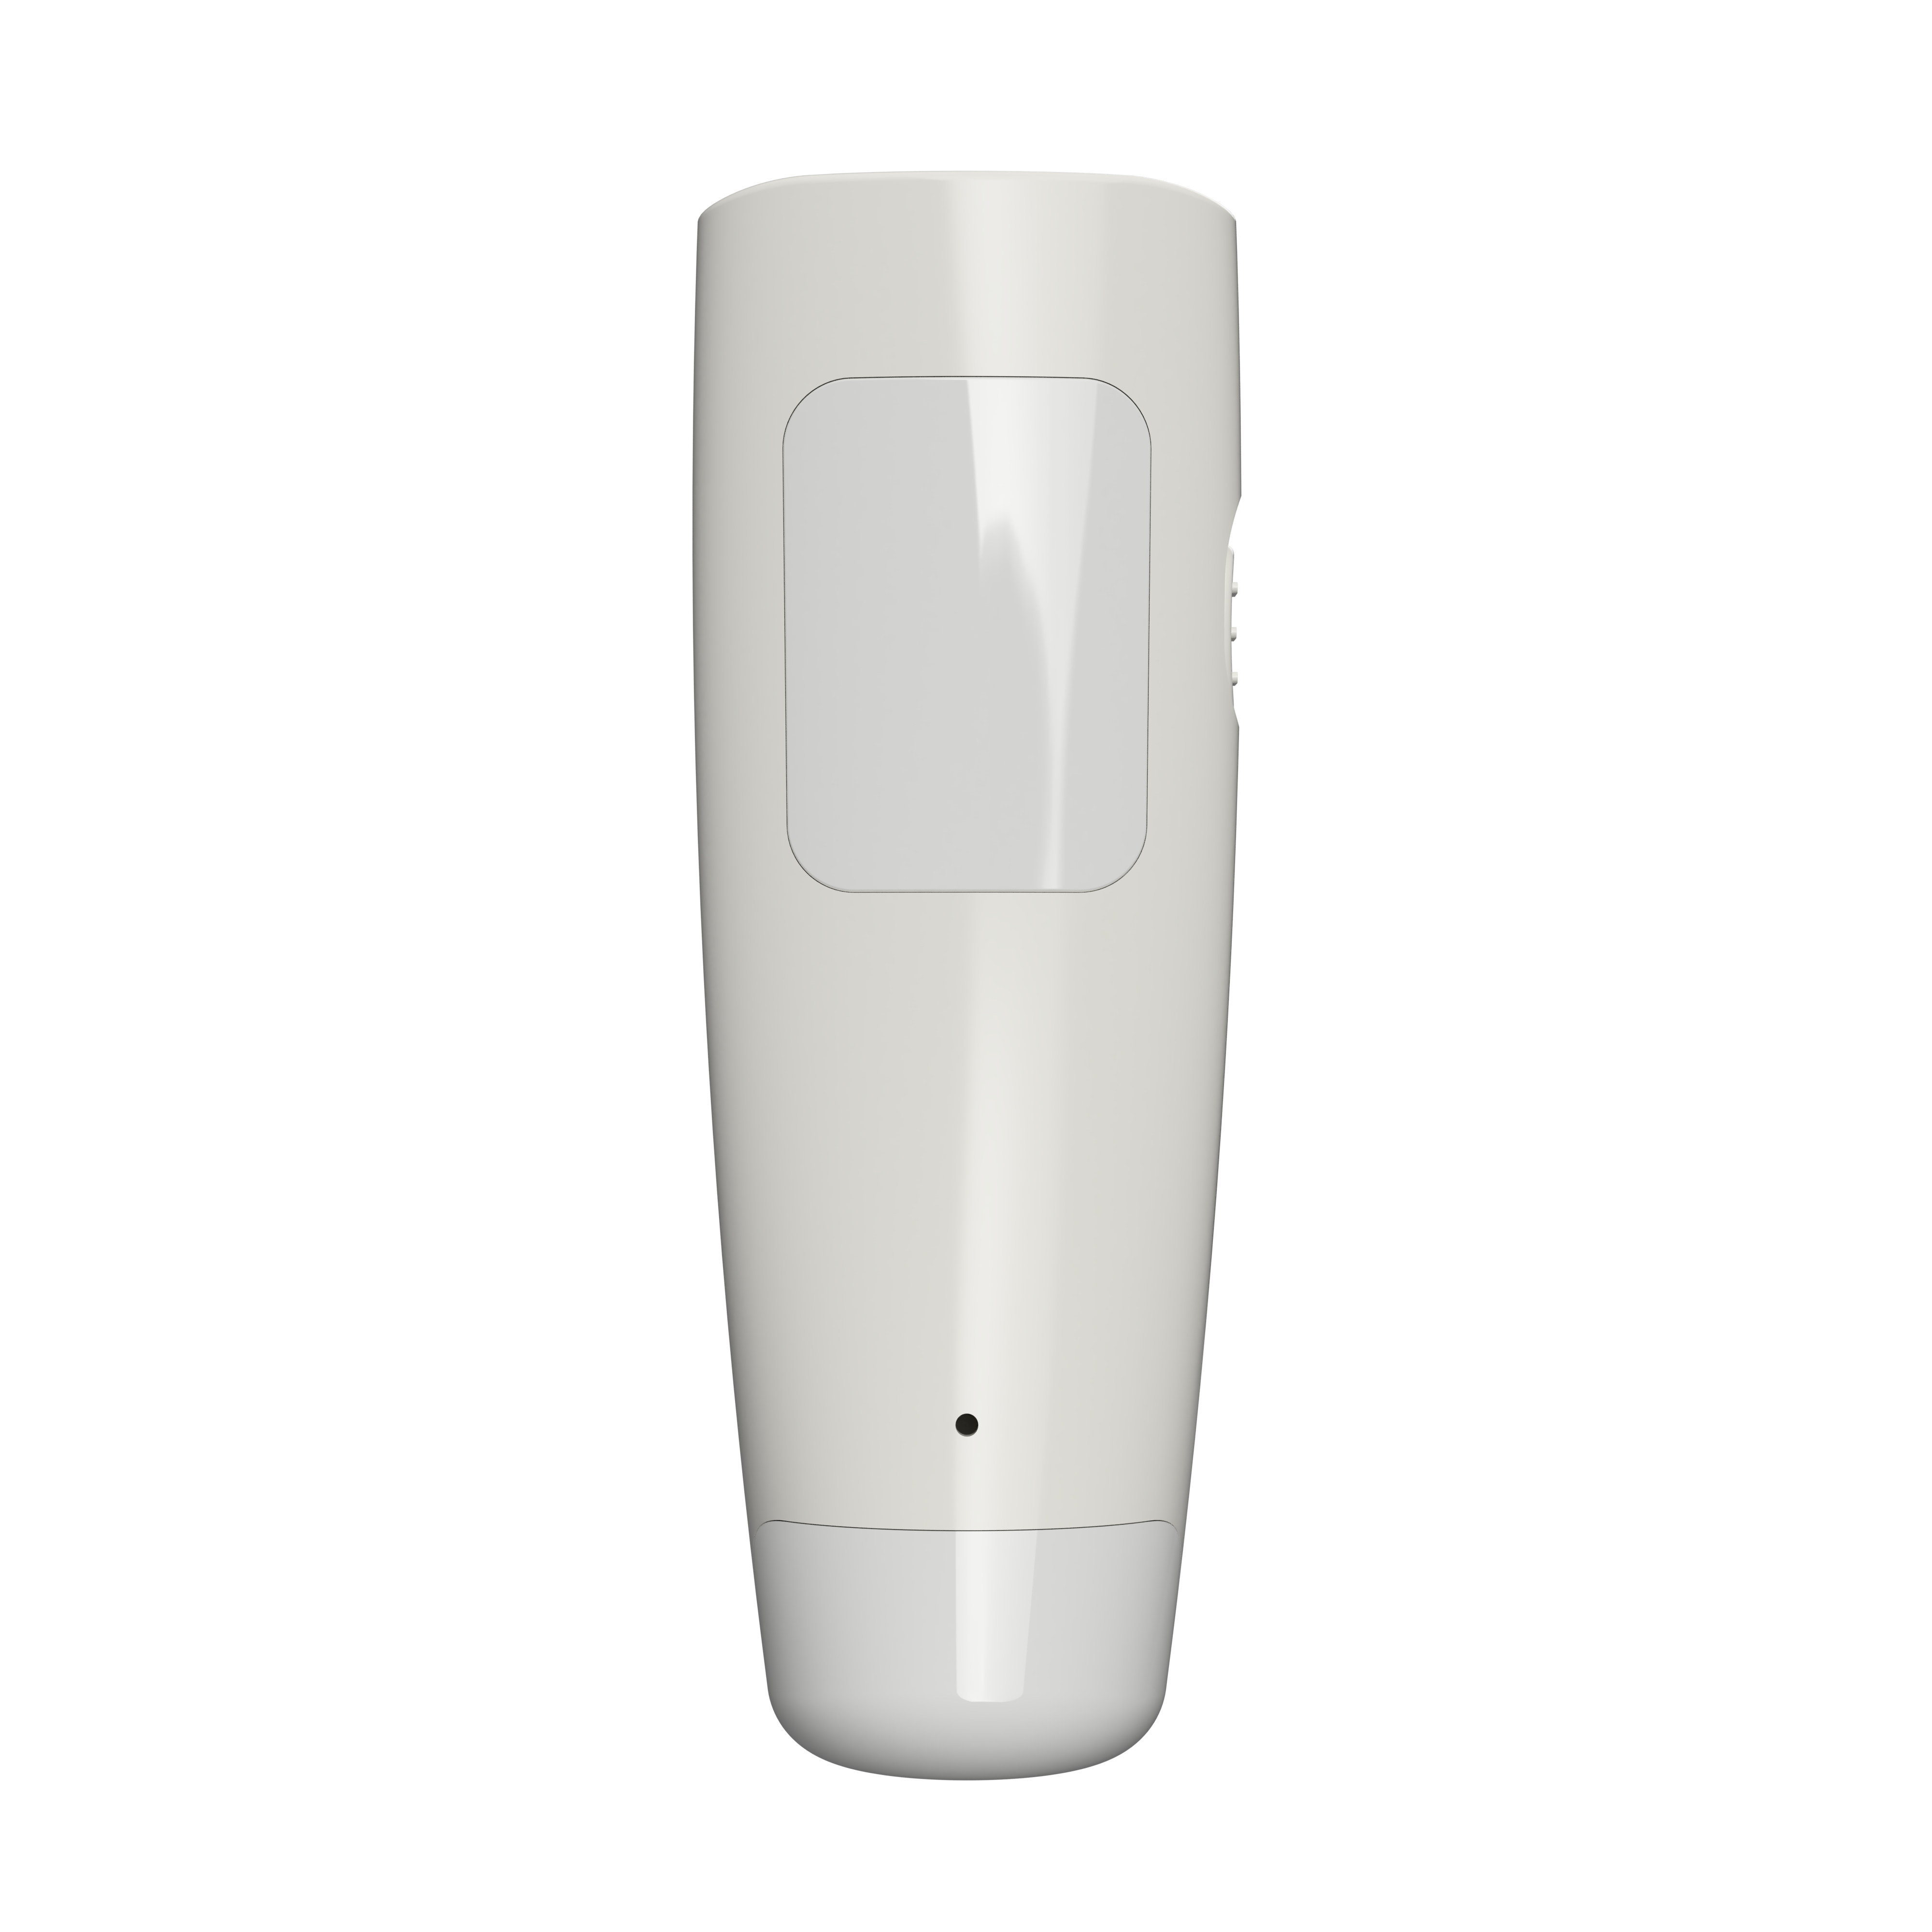 Amertac-Westek LED Slimline Power Failure Light 3-in-1 Flashlight